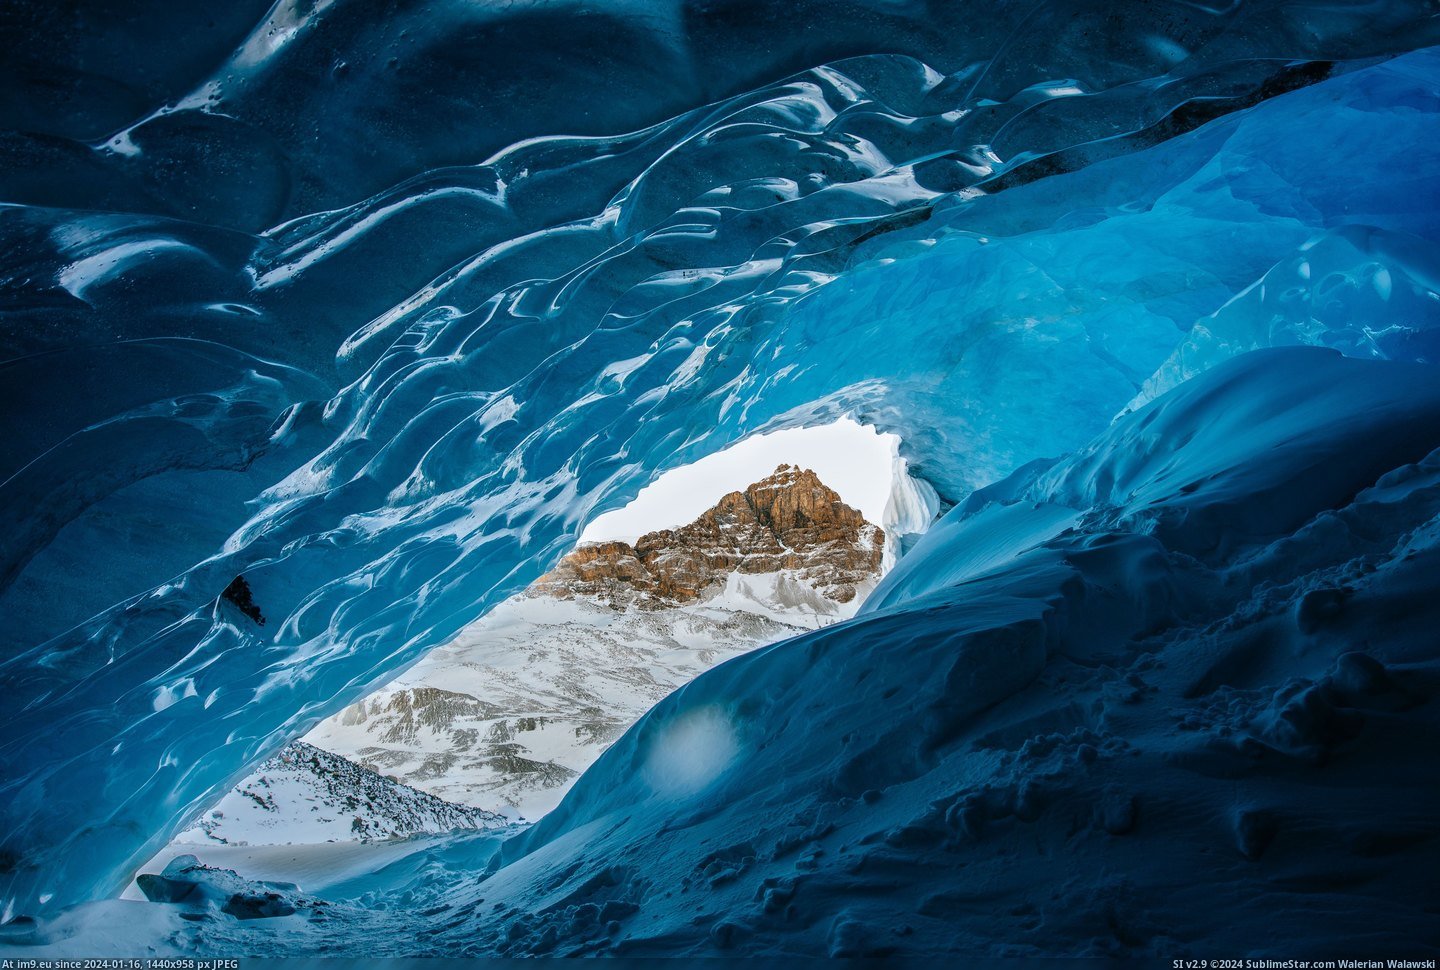 #Canada #Jasper #Glacier [Earthporn] Mt. Athabasca from inside the Athabasca Glacier, Jasper, AB, Canada [5737x3830] Pic. (Bild von album My r/EARTHPORN favs))